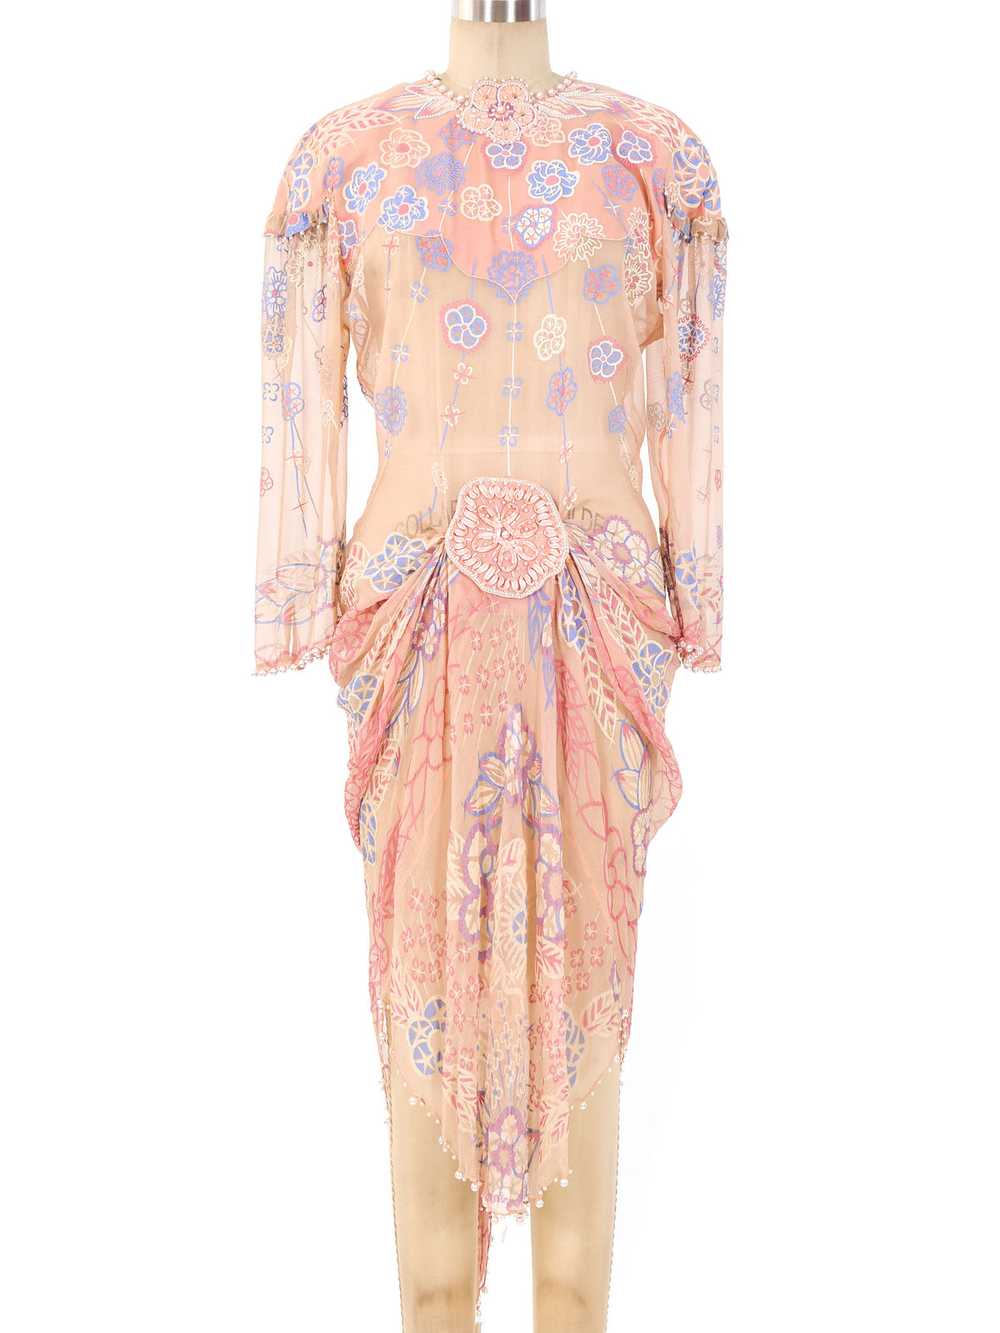 Zandra Rhodes Embellished Chiffon Dress - image 1